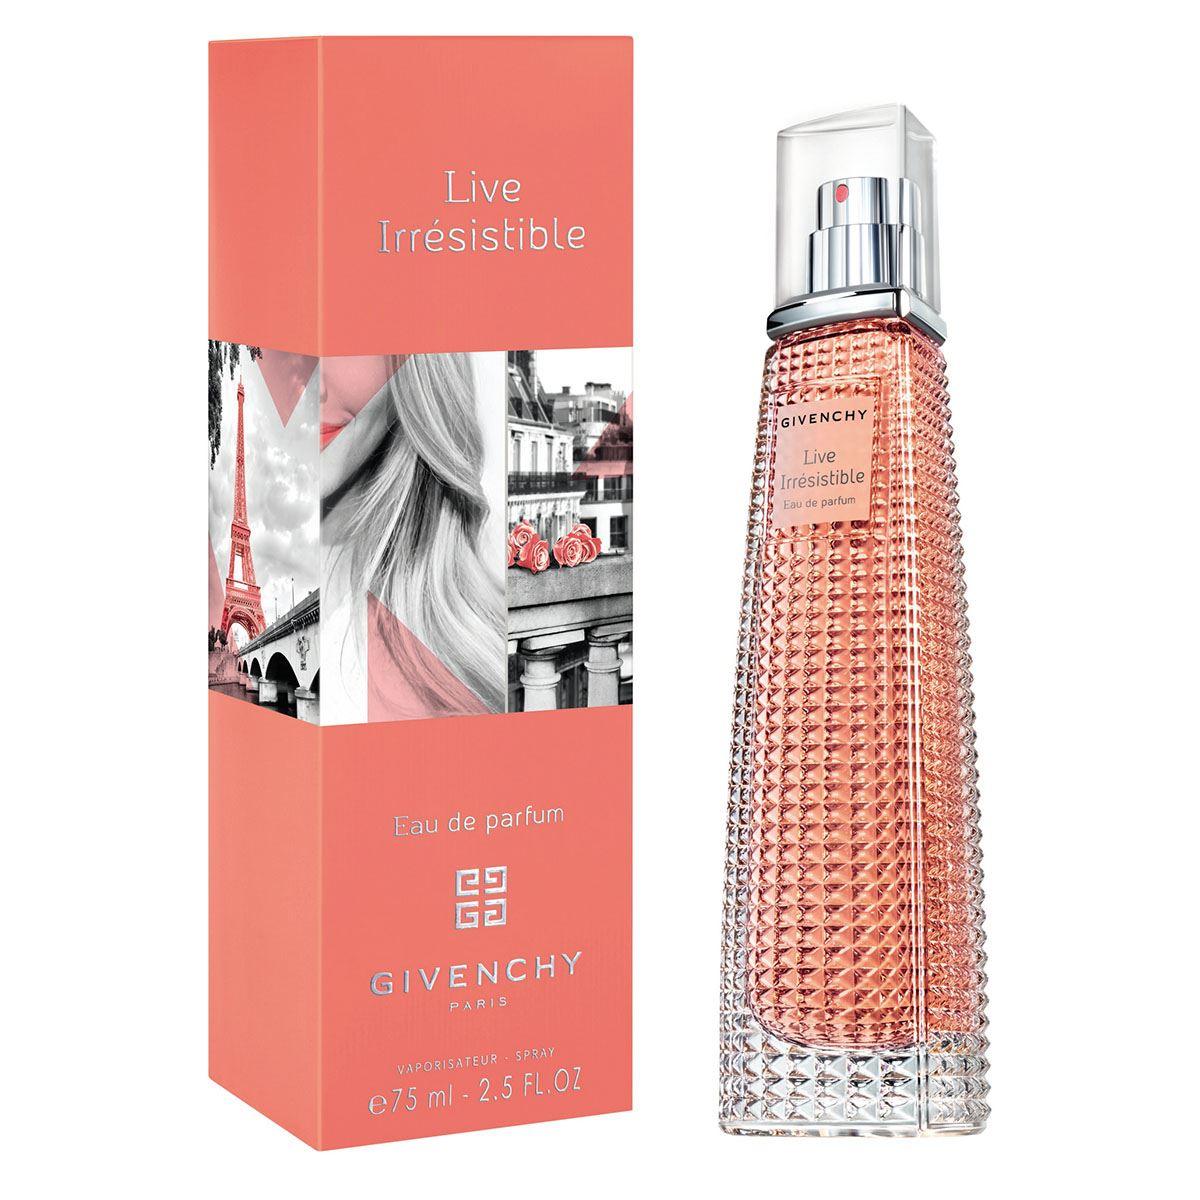 Live irresistible - Givenchy - 75ml - Eau de Parfum – eaudeparfumstore